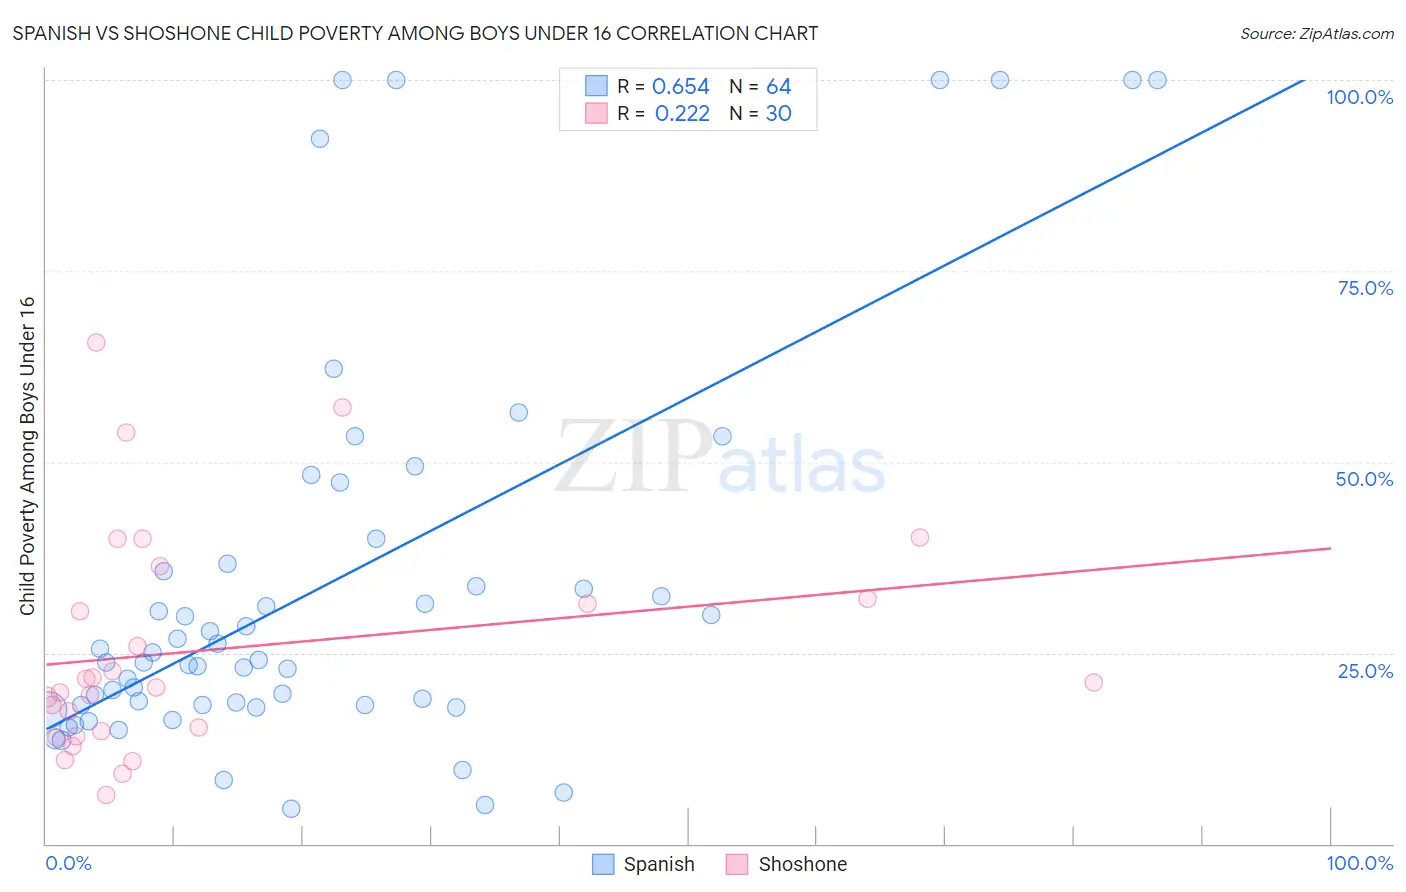 Spanish vs Shoshone Child Poverty Among Boys Under 16